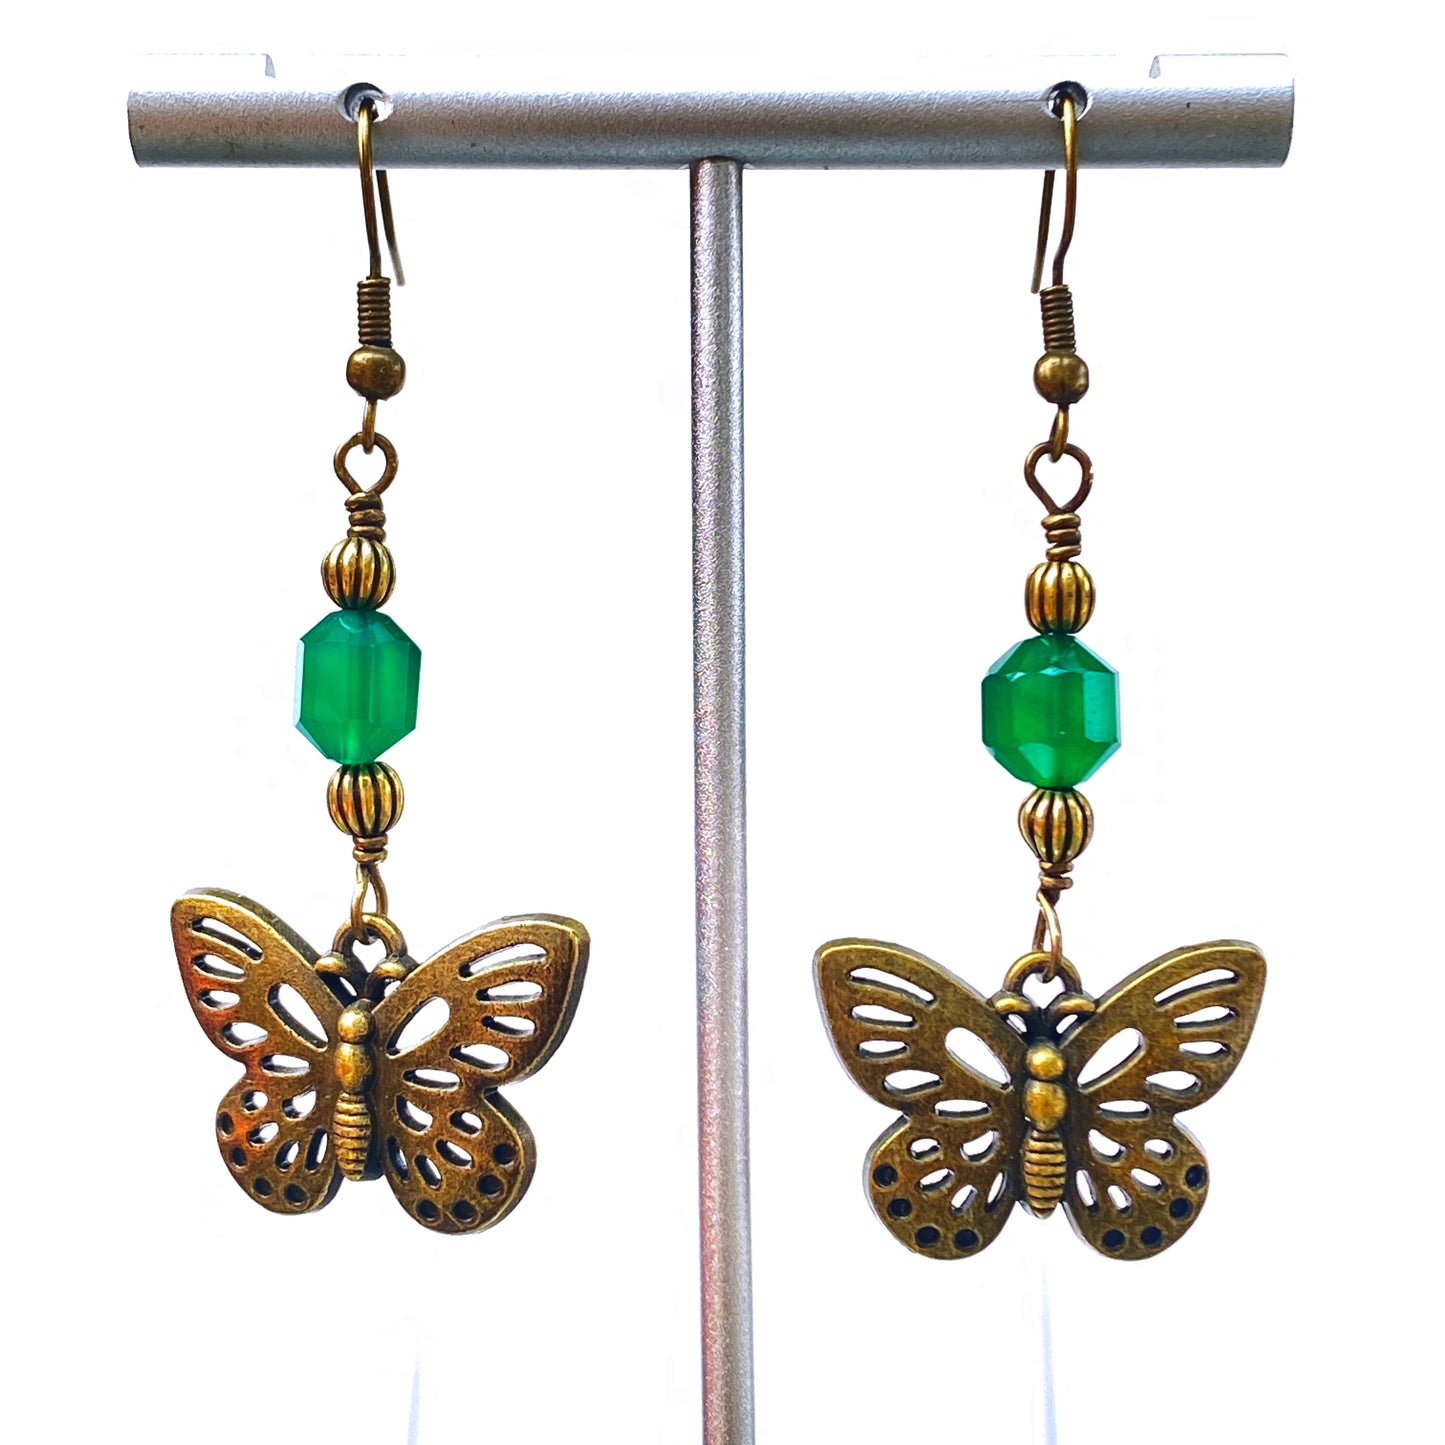 Green Agate gemstone Butterfly Earrings